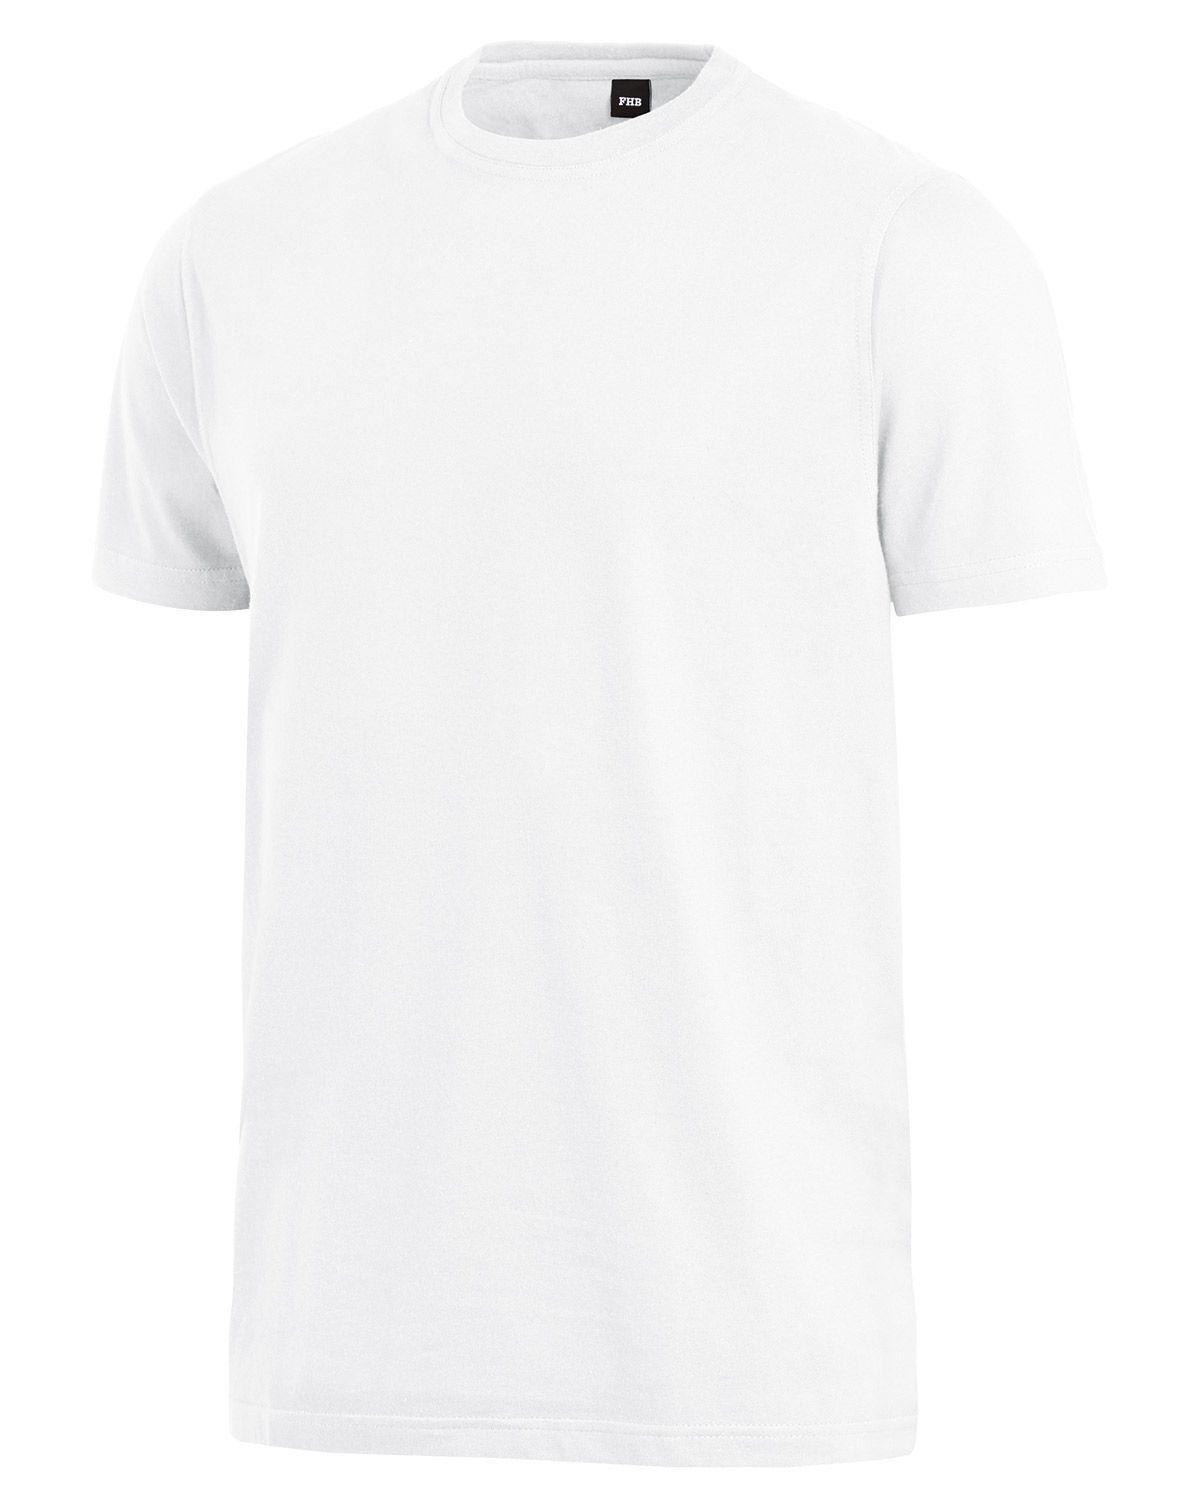 #1 på vores liste over t-shirte er T-Shirt